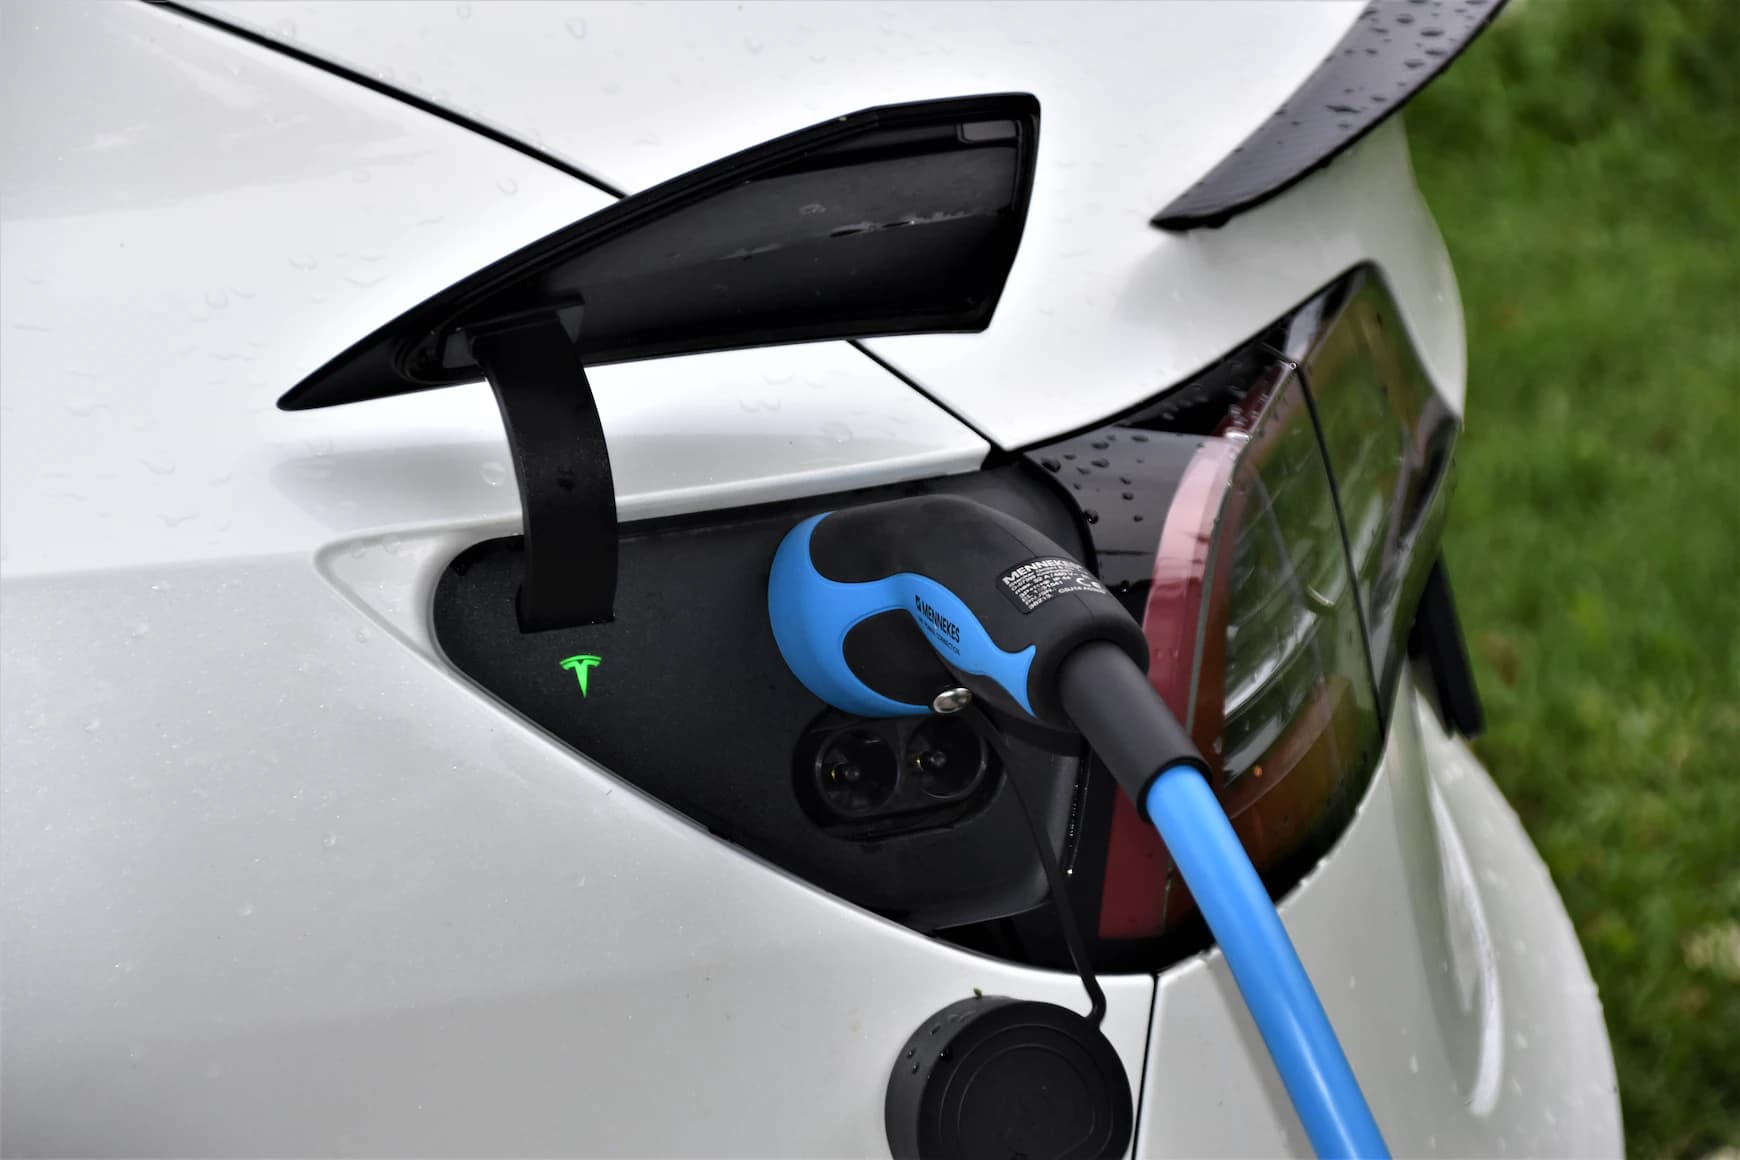 Prix de recharge Tesla: Comprendre les coûts de recharge pour les